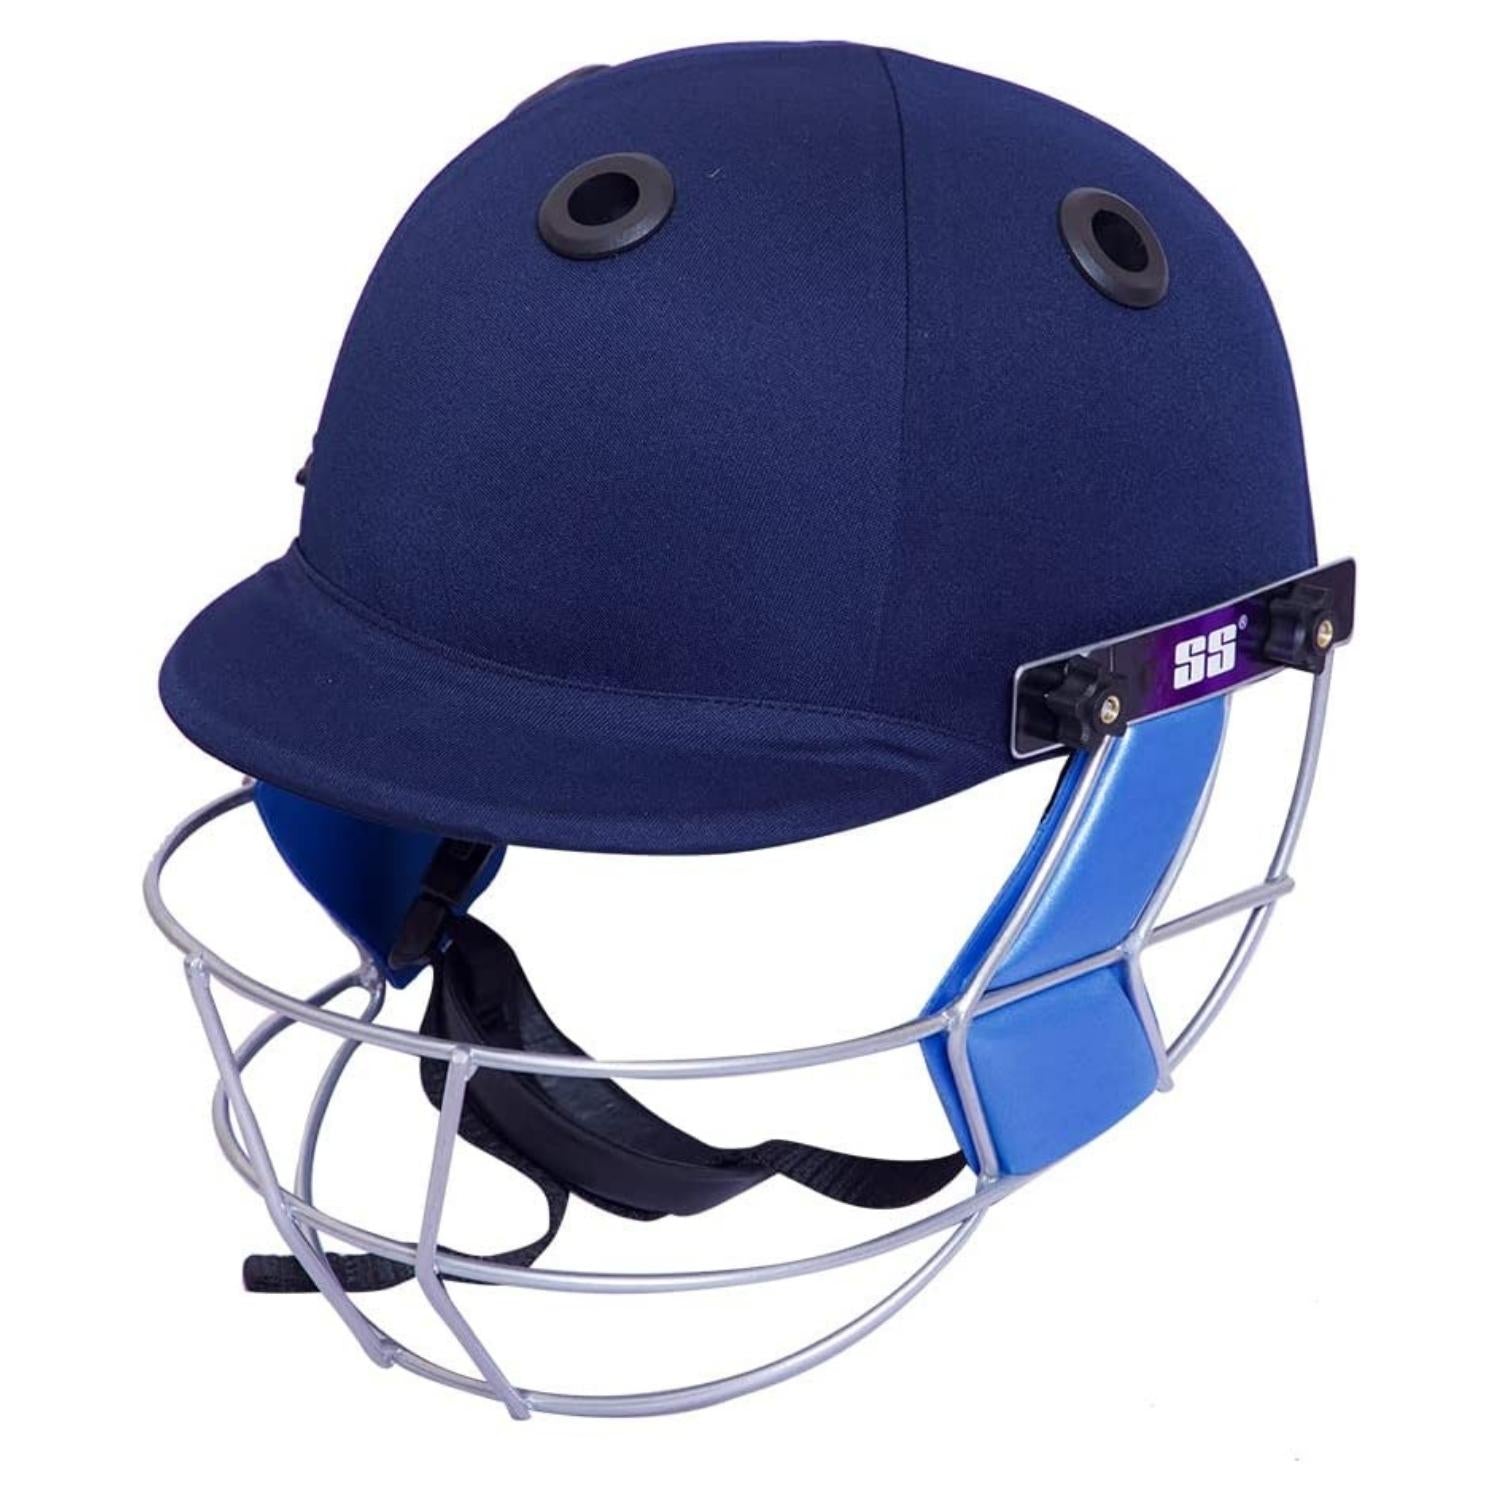 SS Cricket Batting Helmet Gutsy Navy Blue